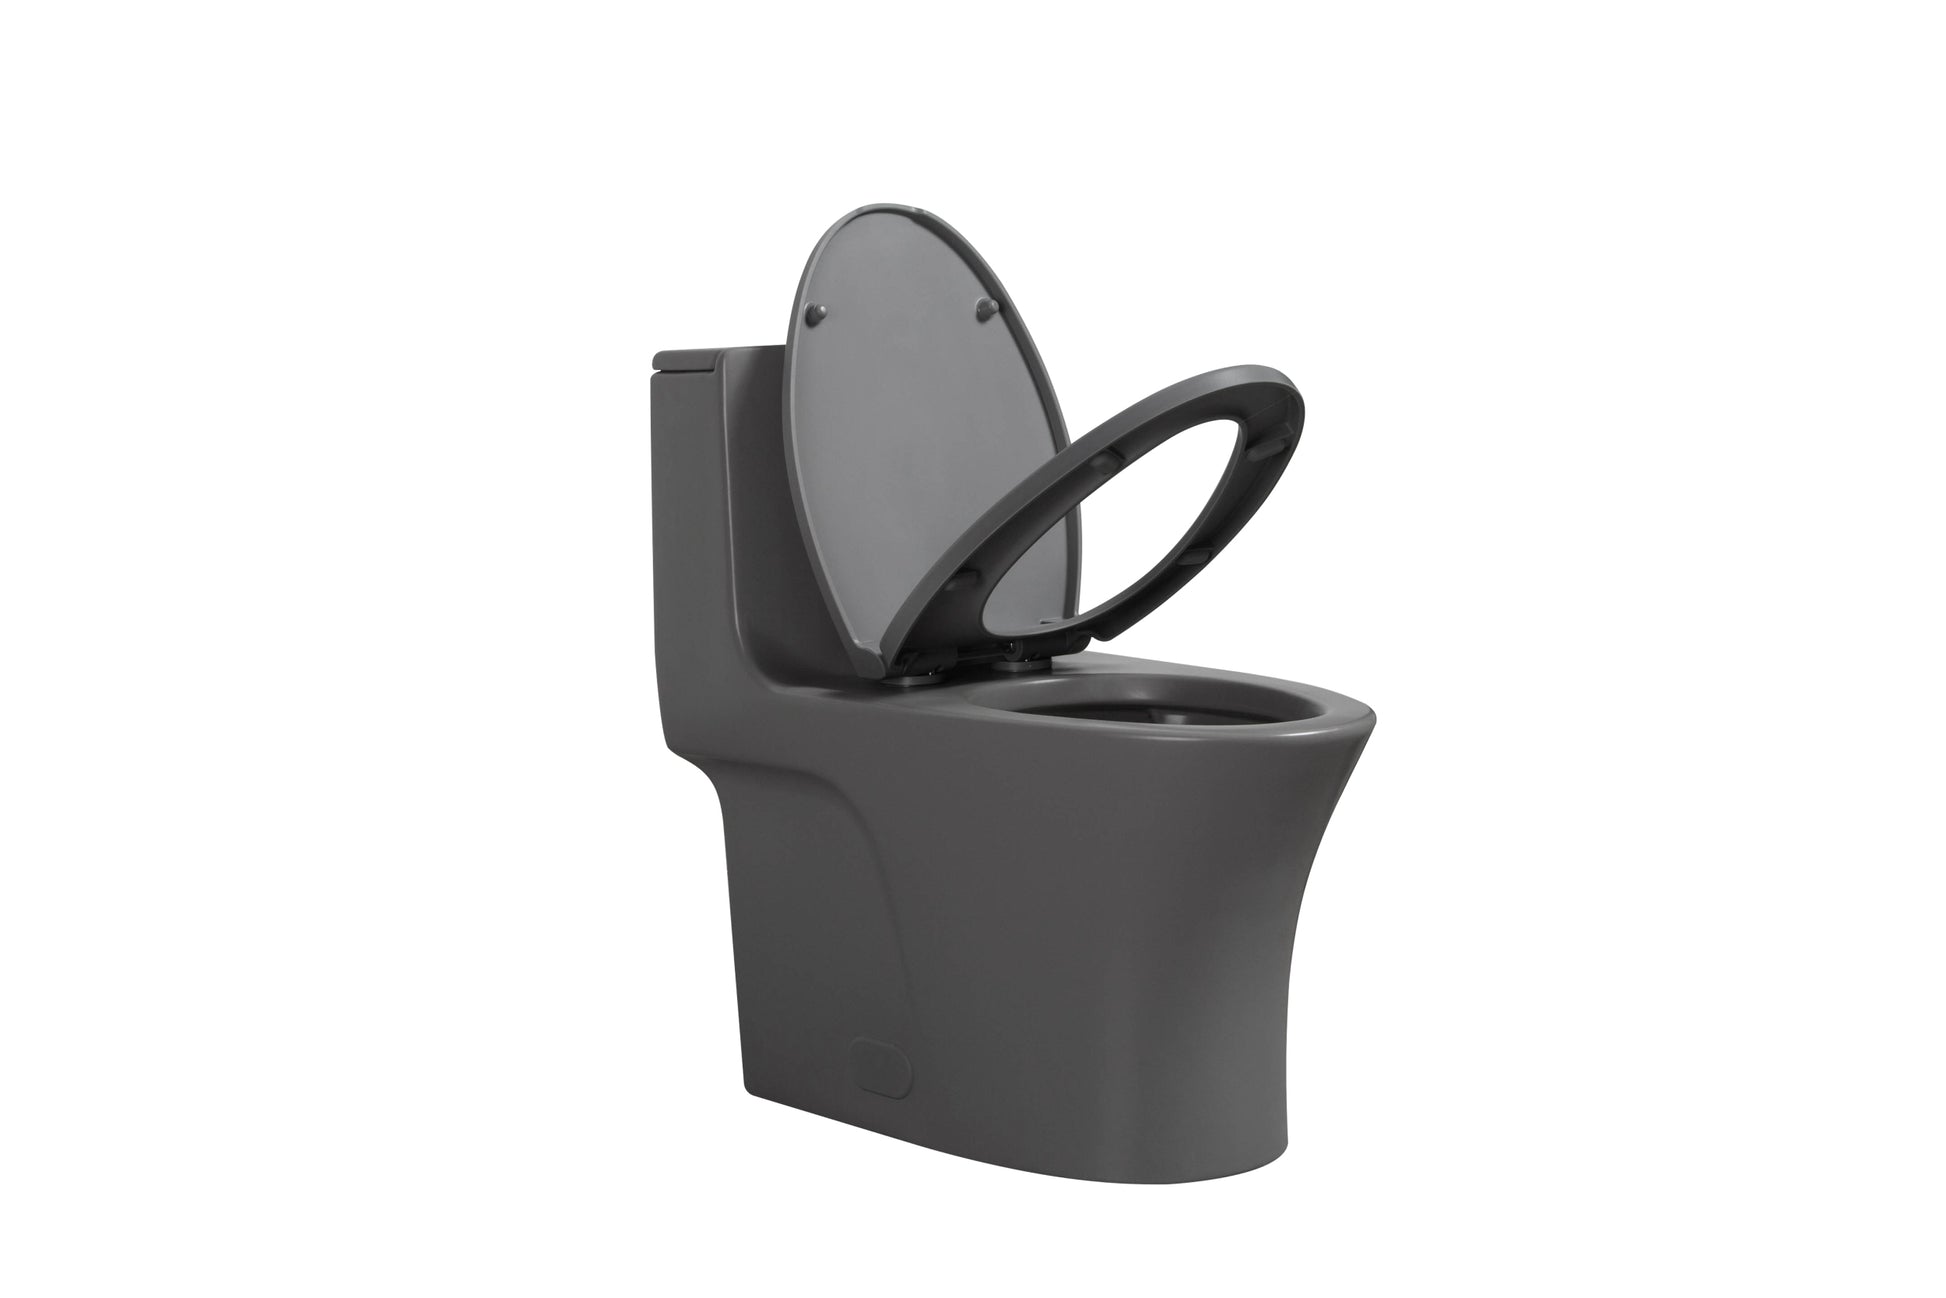 Light Gray Toilet Seat Cover23T02 Lgp01 - Light